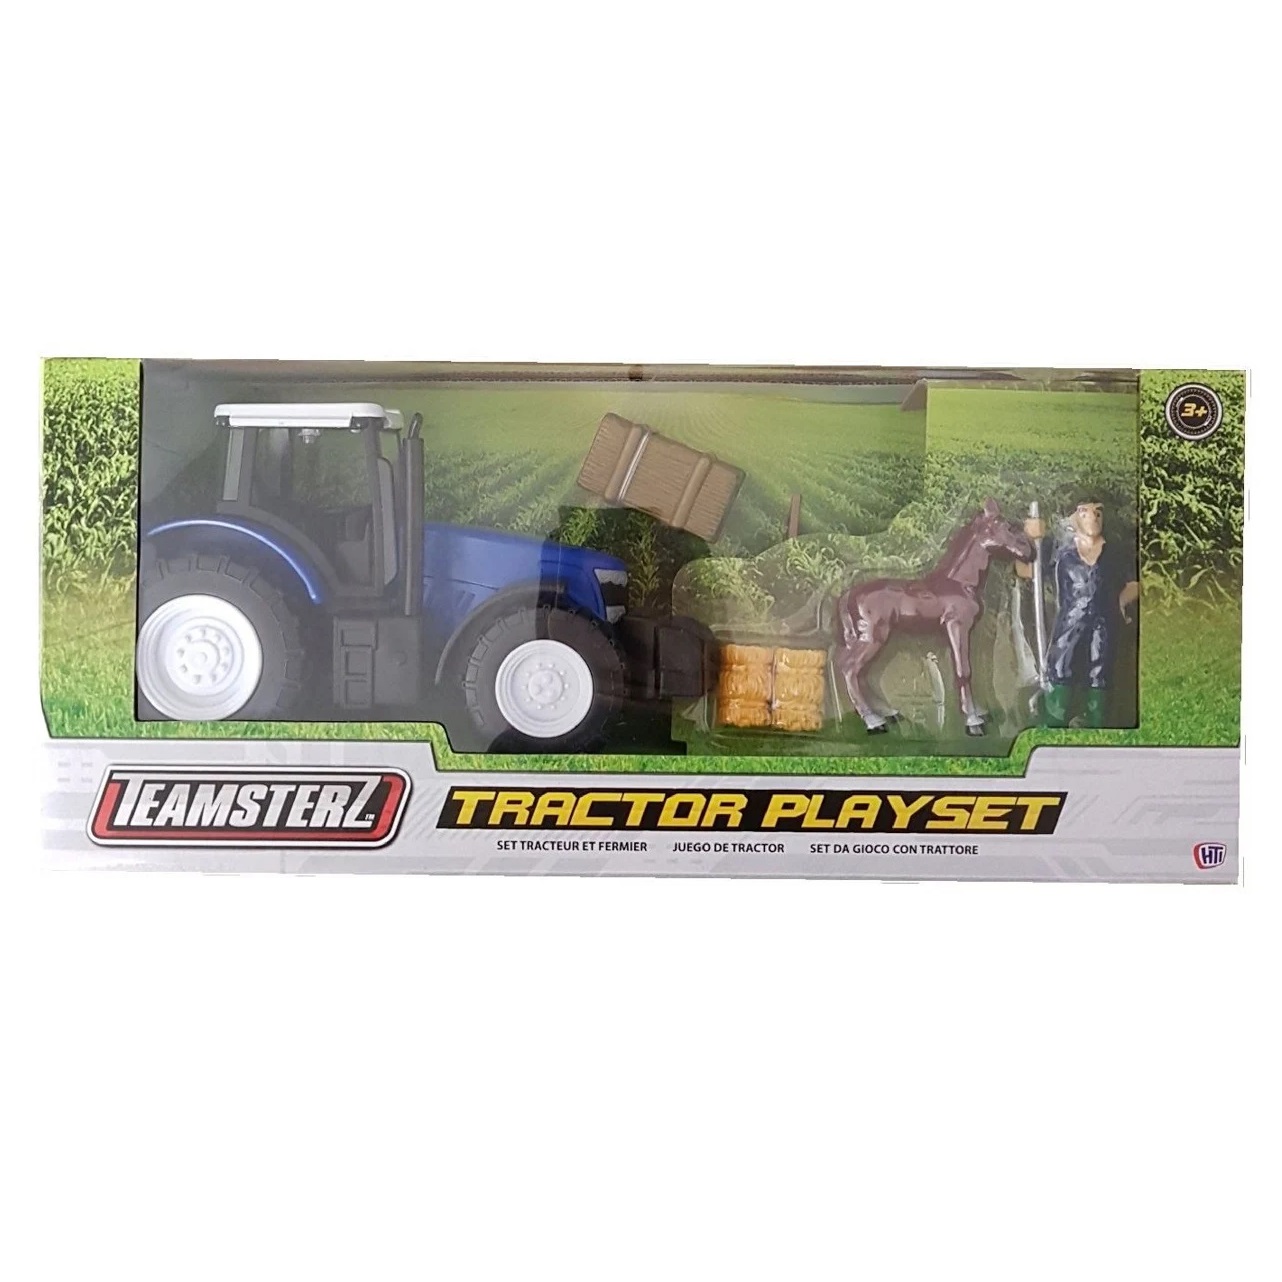 Teamsterz kék traktor játékkészlet, 18 cm